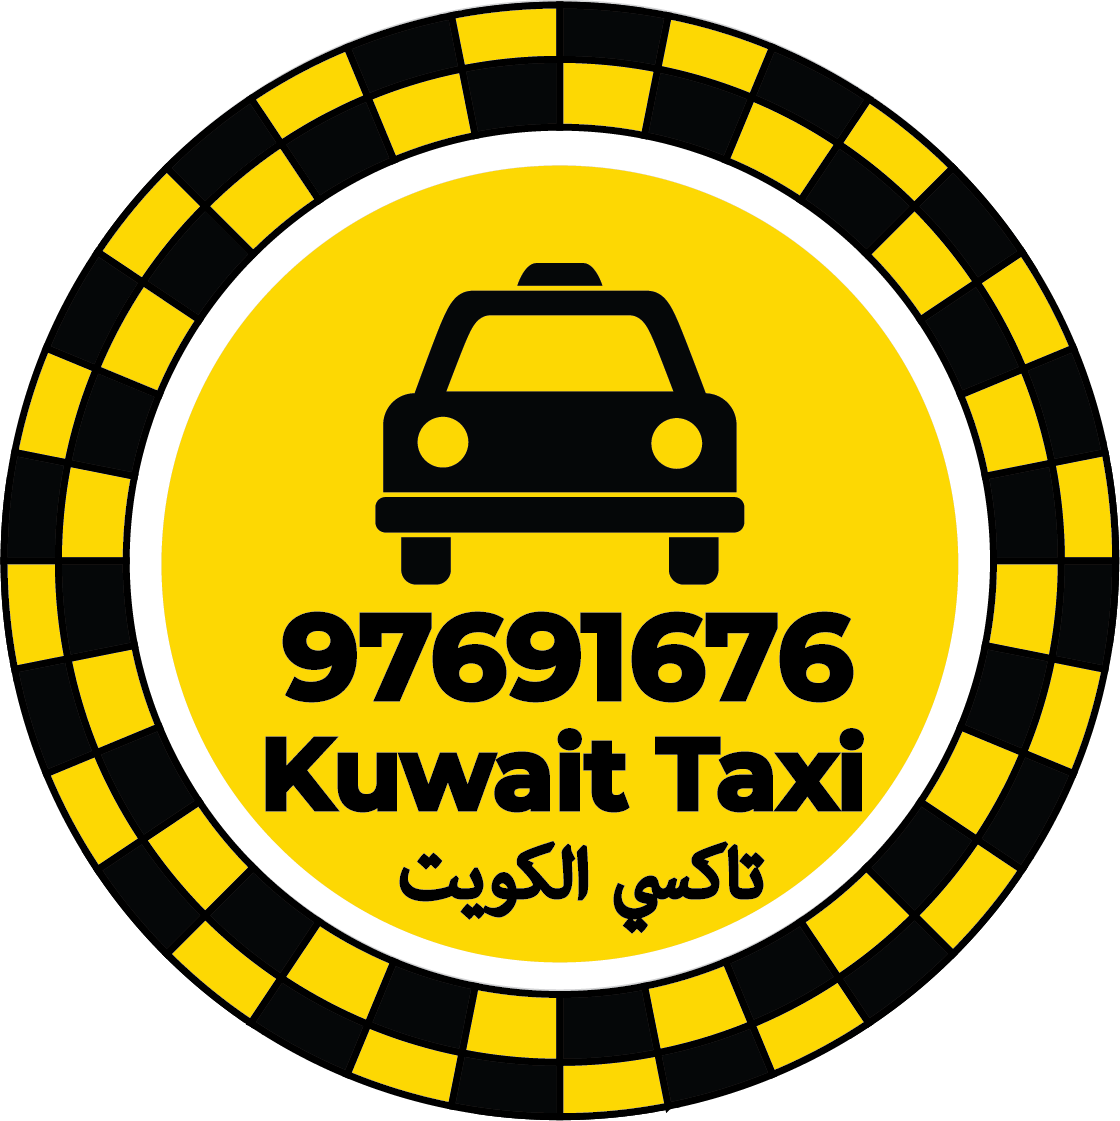 تاكسي الرابية الكويت - رقم تاكسي 97691676 الرابية